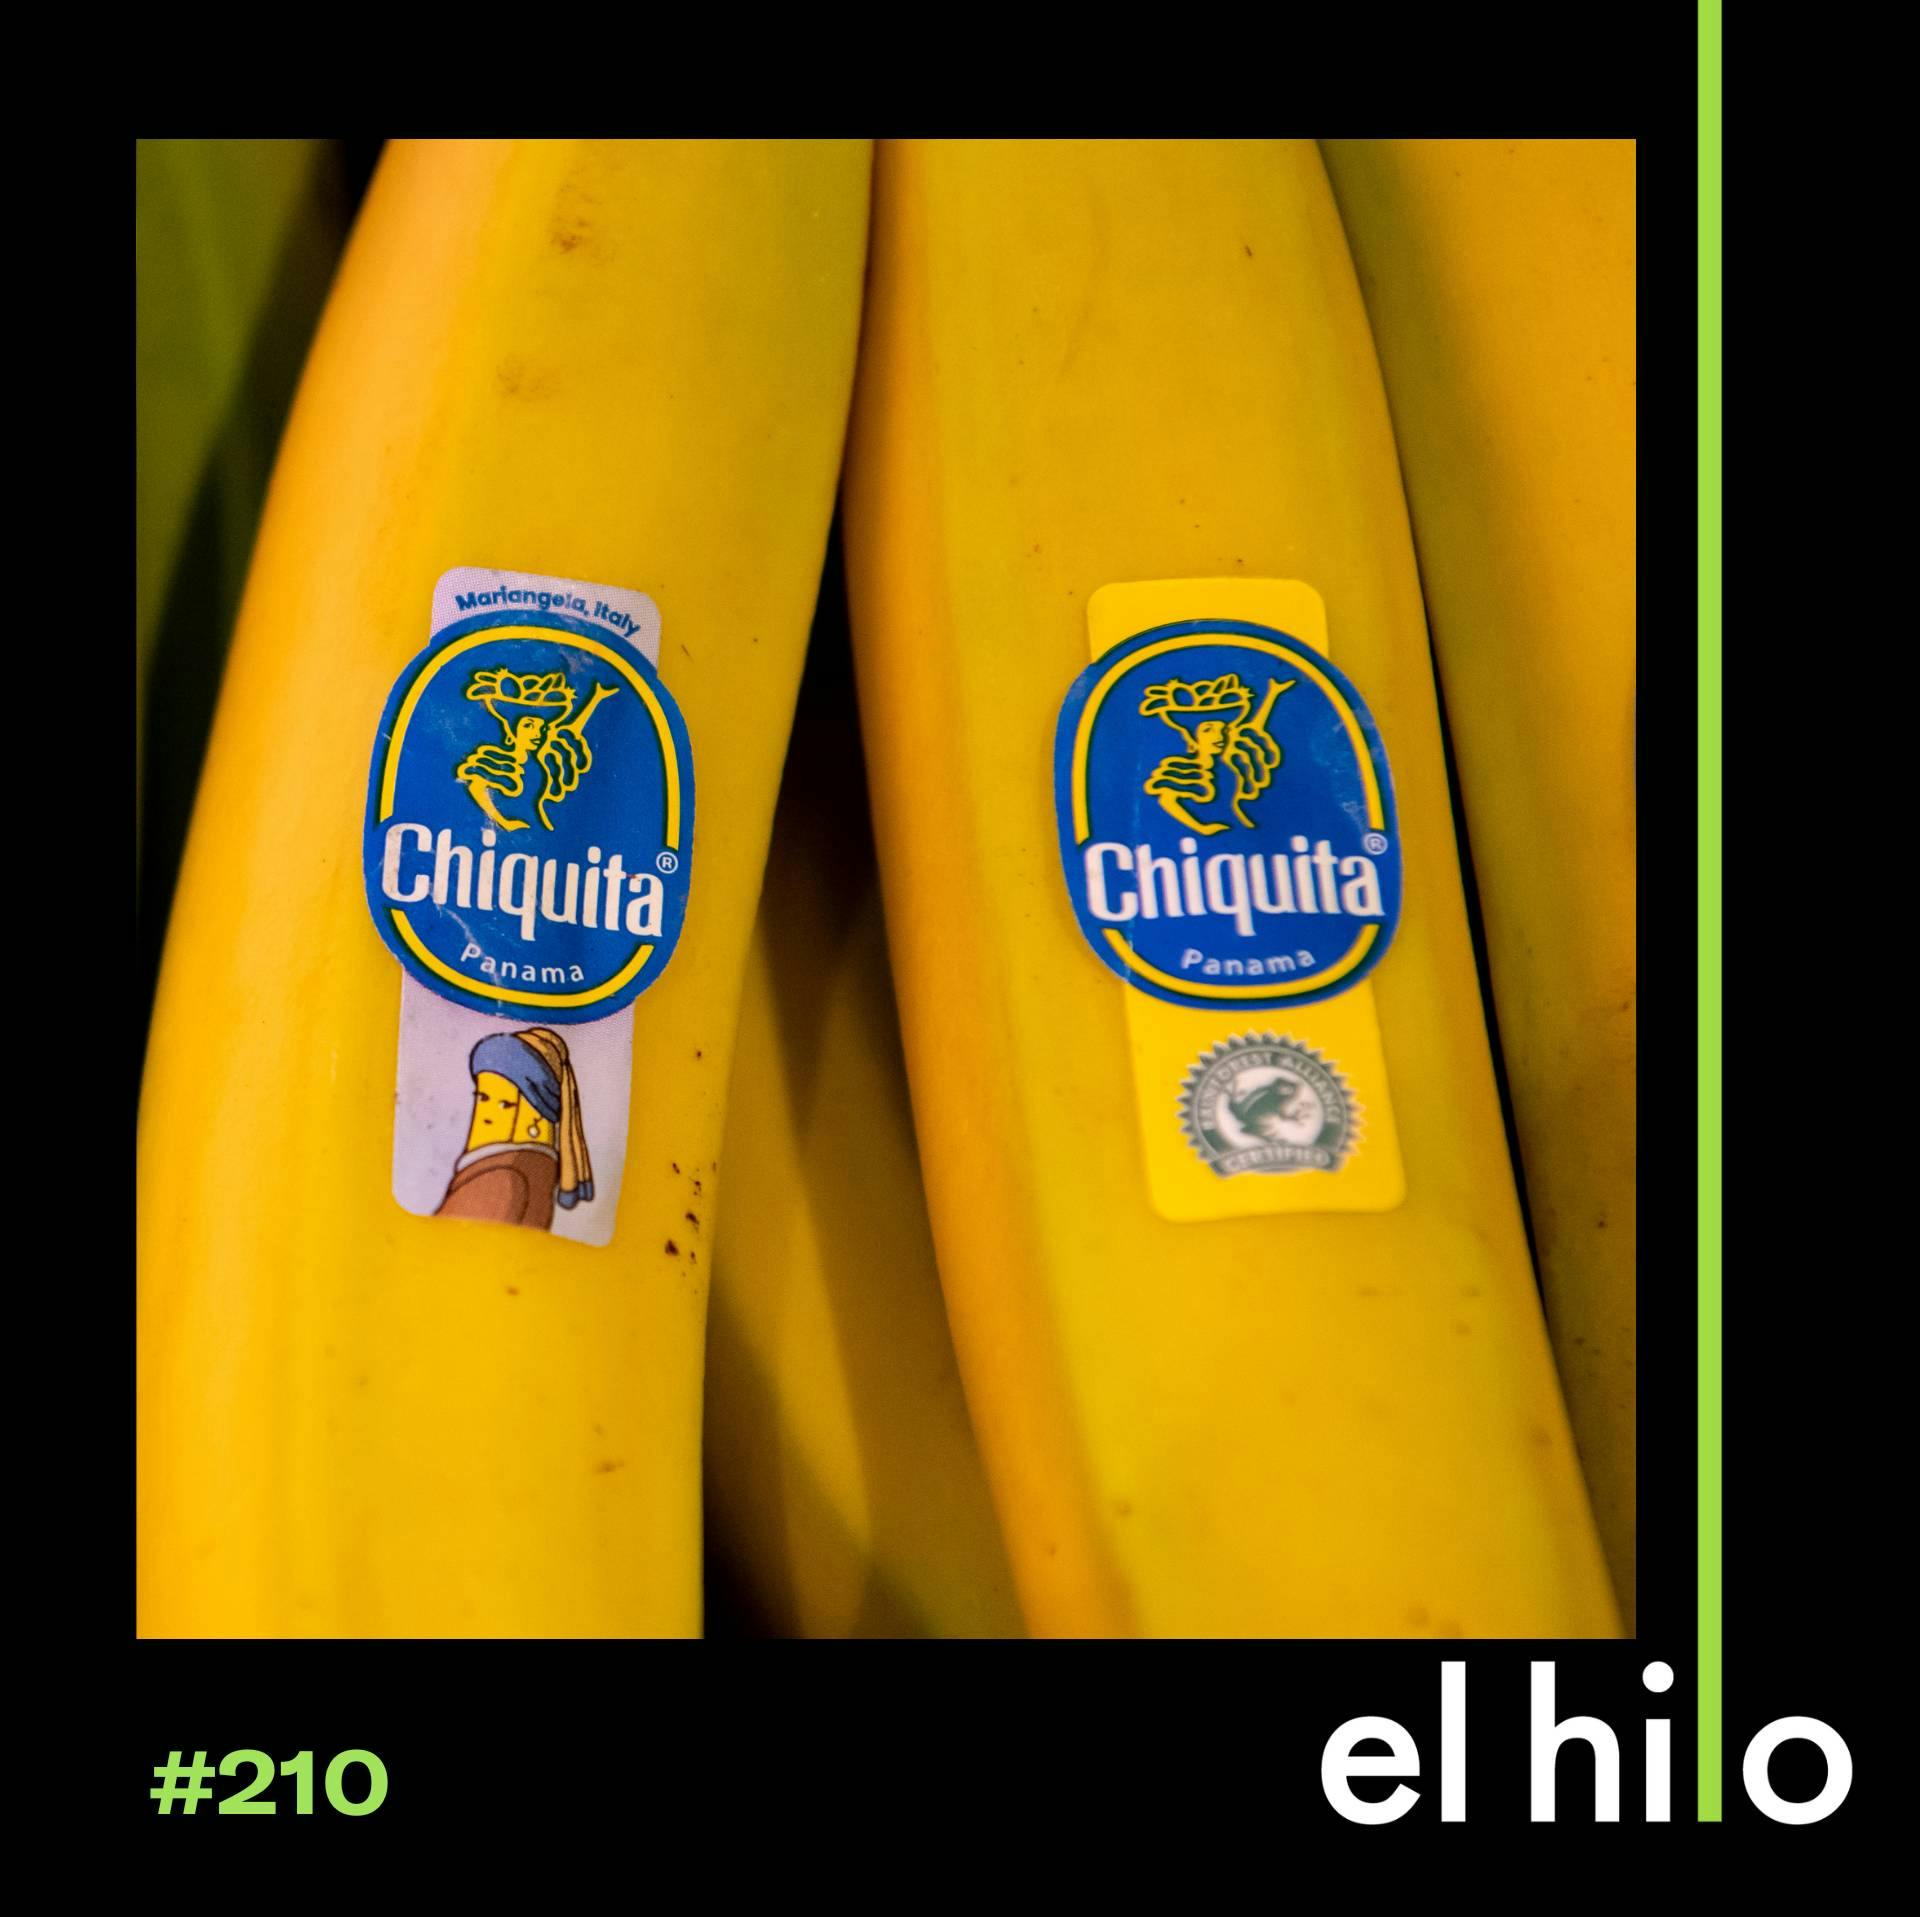 Una condena para Chiquita, la bananera que financió asesinatos en Colombia